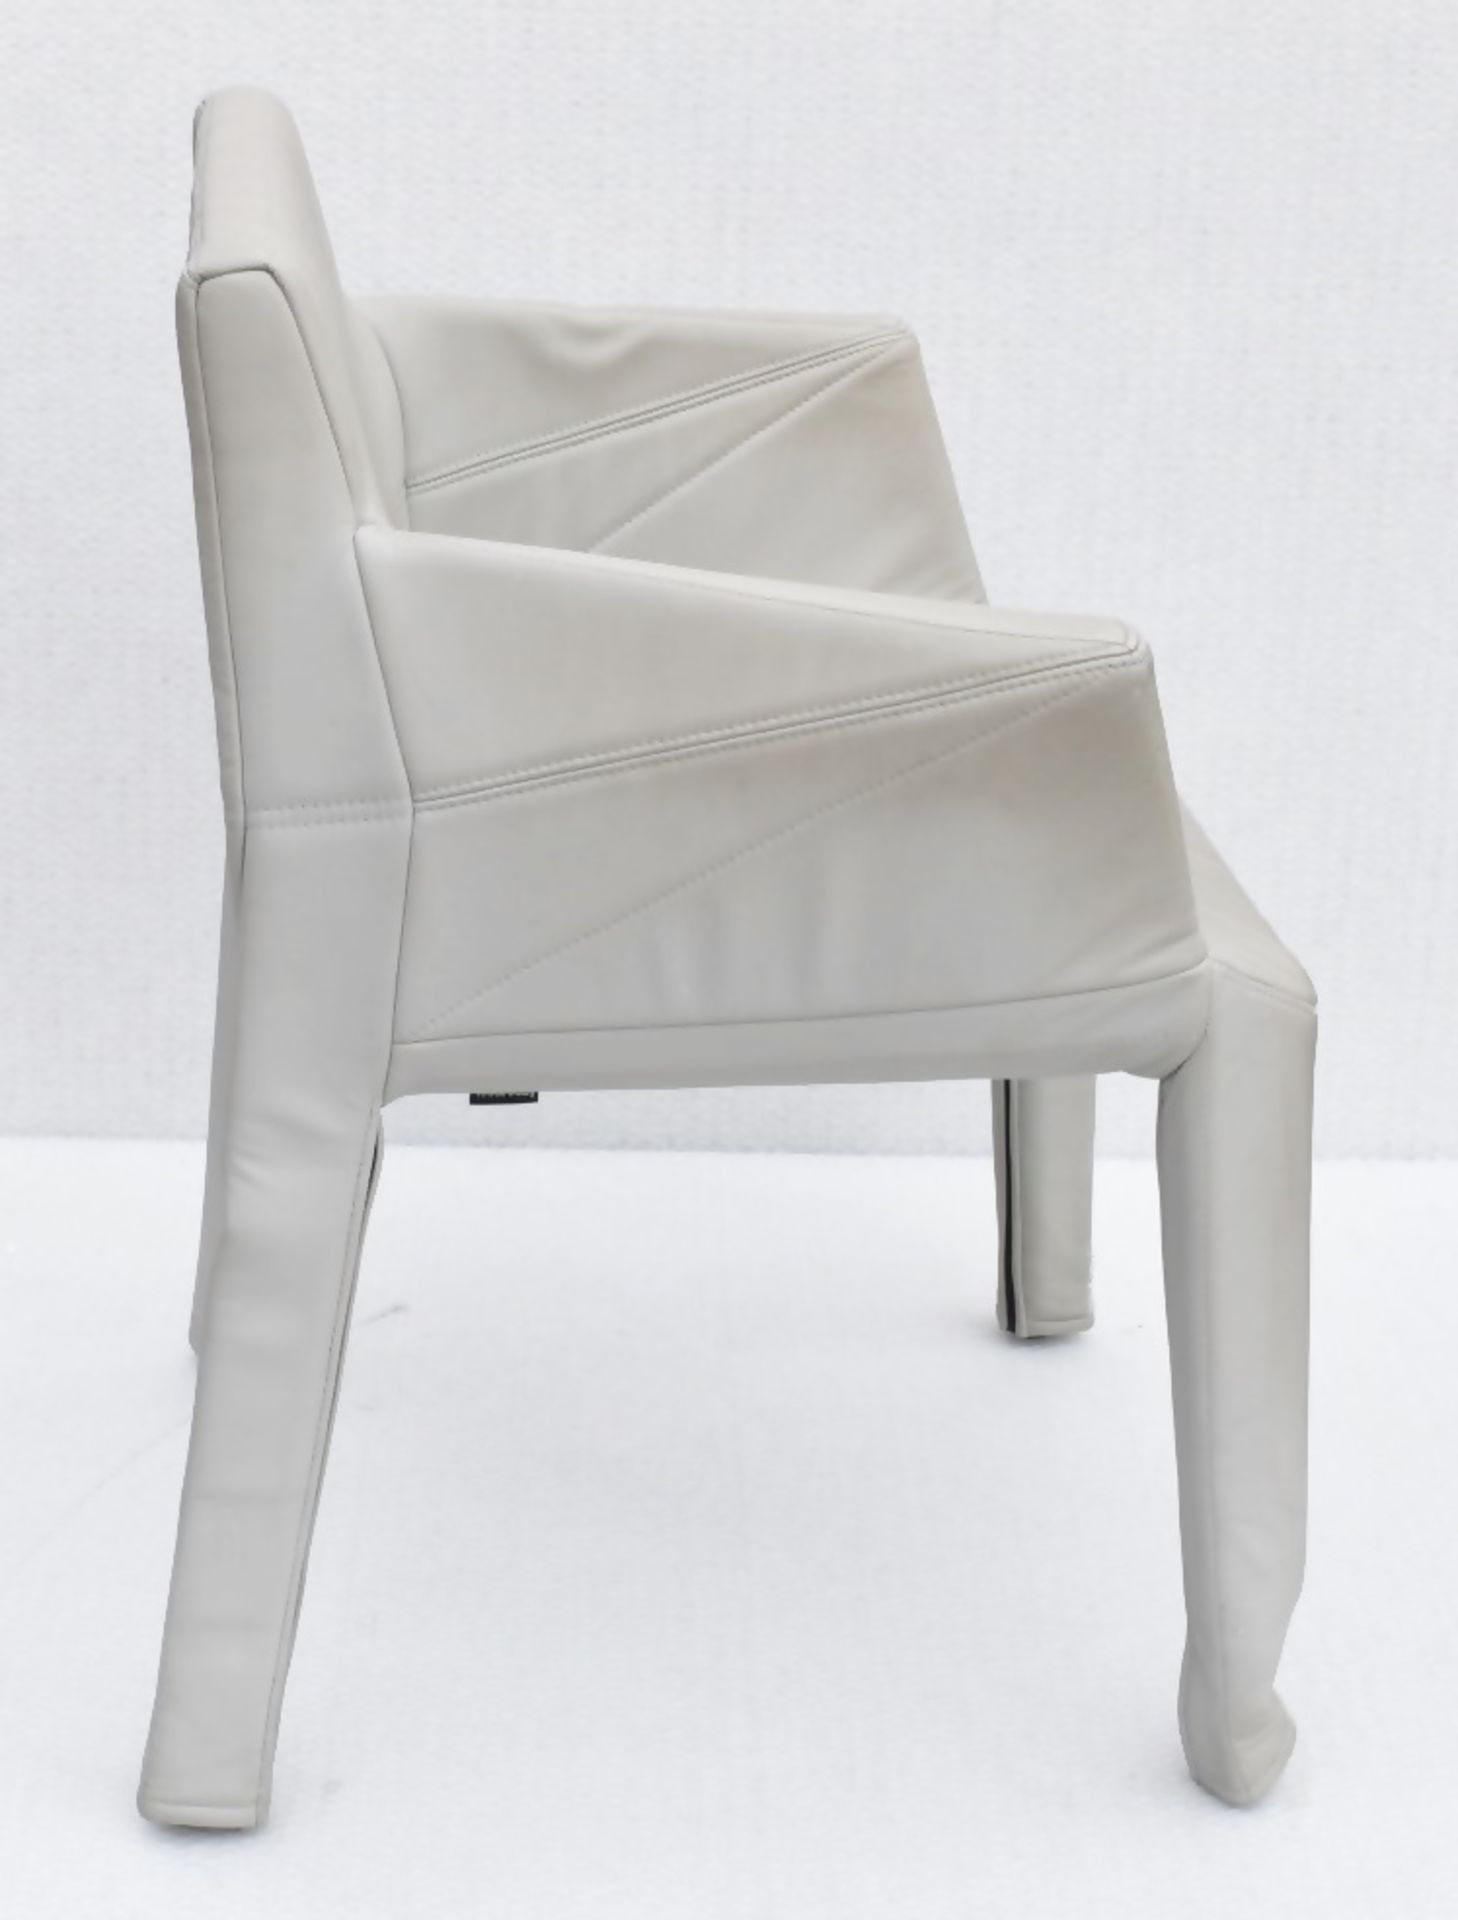 A Pair Of LIGNE ROSET 'Facett' Designer Carver Chairs - Total Original Price £2,432 - Image 6 of 12